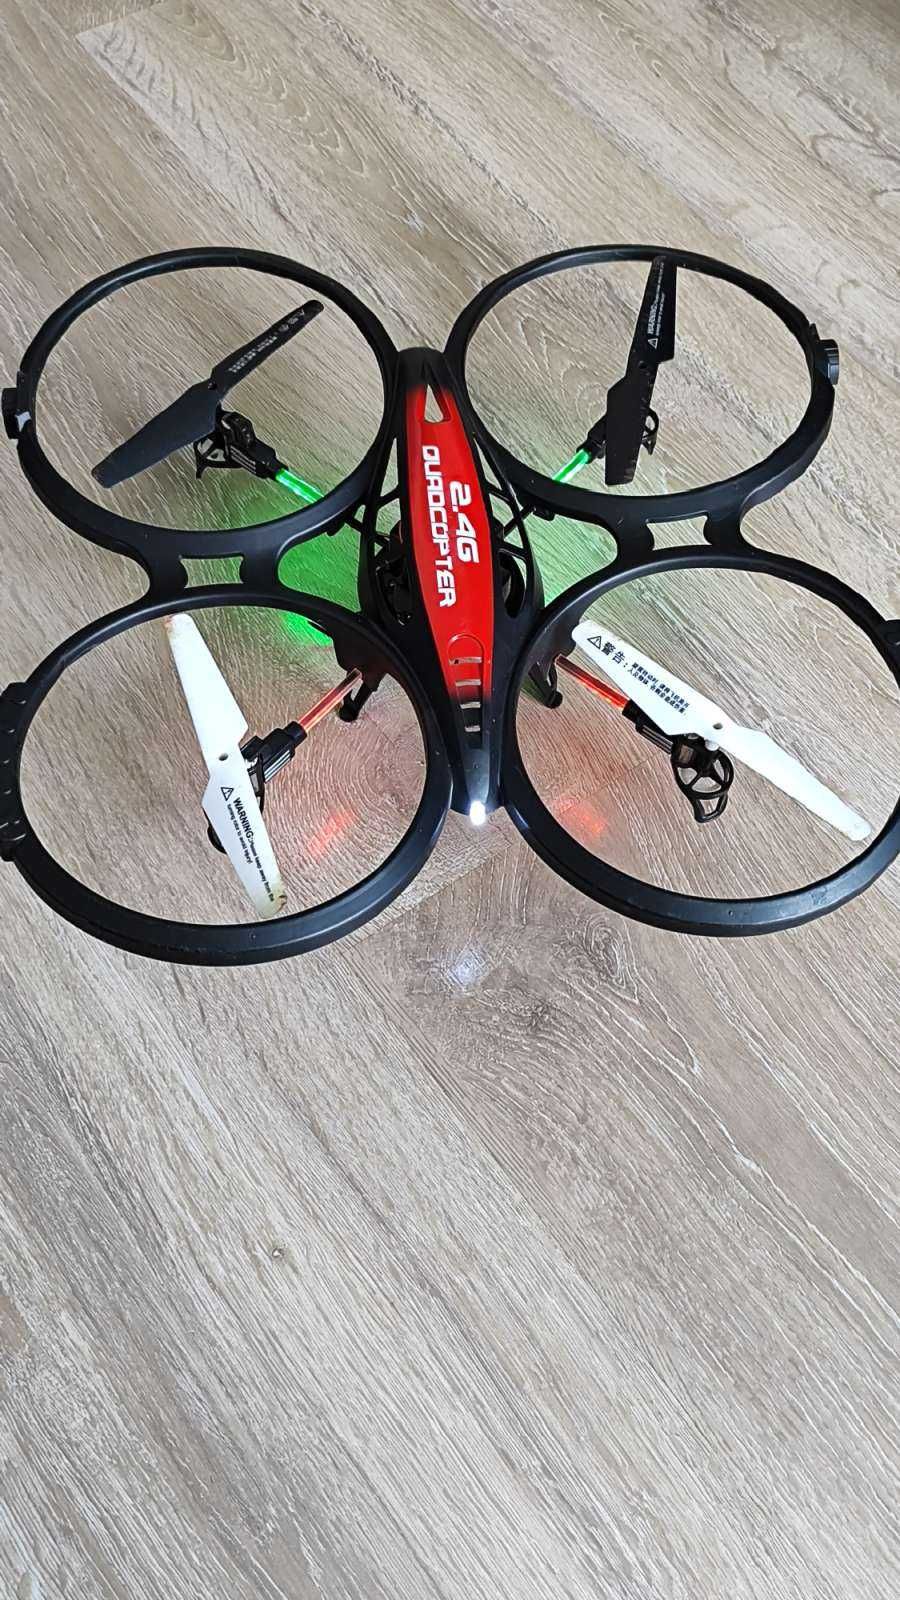 DRON quadrocopter AIRCRAFT L6036